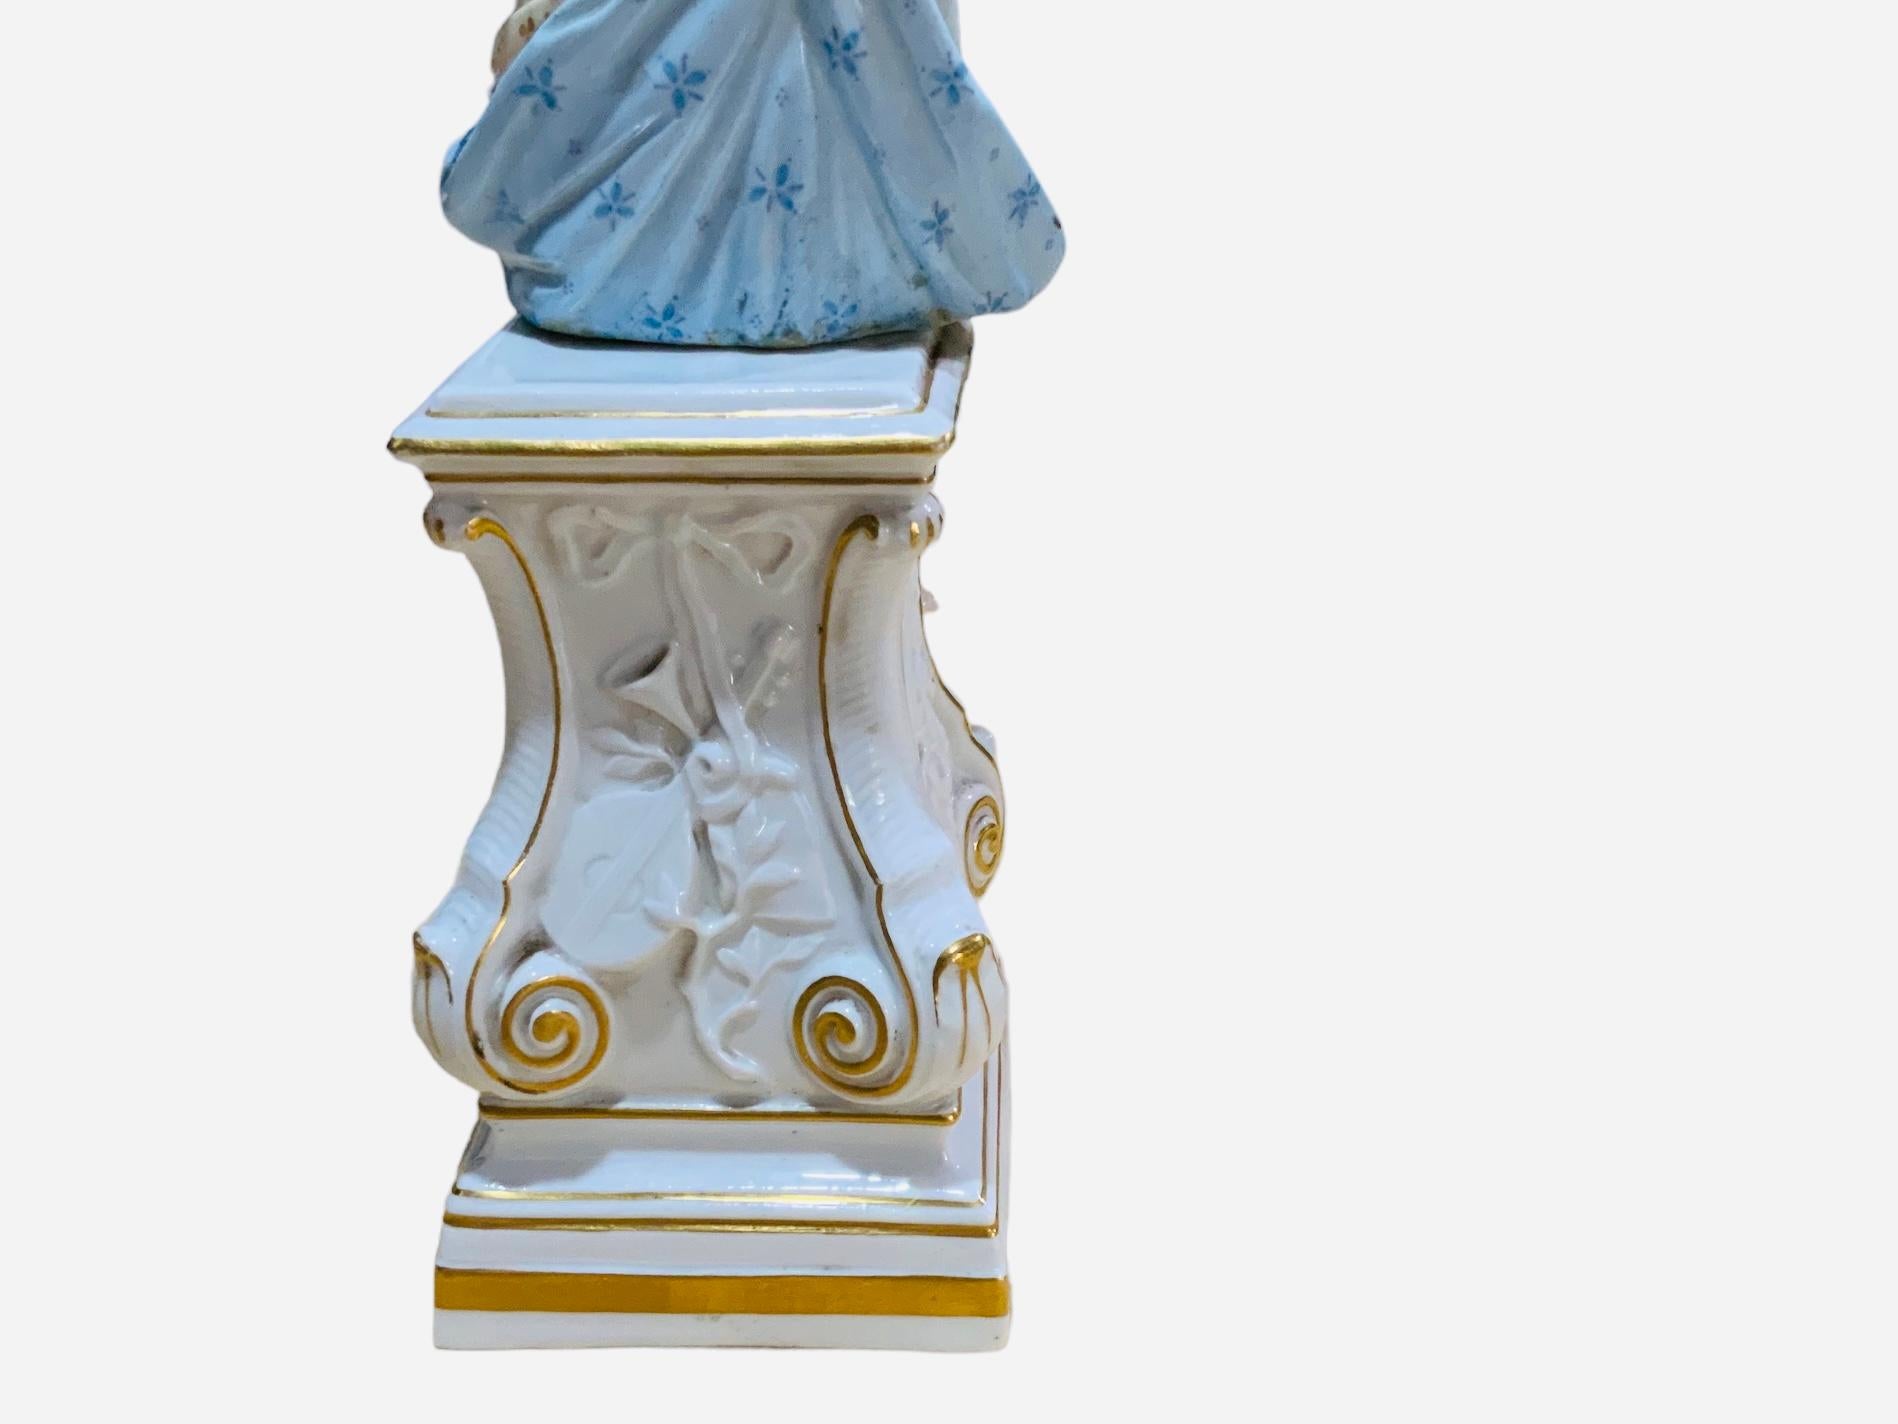 Figurine de la Muse de la mythologie grecque en porcelaine de Meissen jouant du luth. Elle peut être Erato, l'a.muse de la poésie lyrique, en particulier de la poésie érotique et de l'imitation mimique. Elle représente une femme vêtue d'une robe